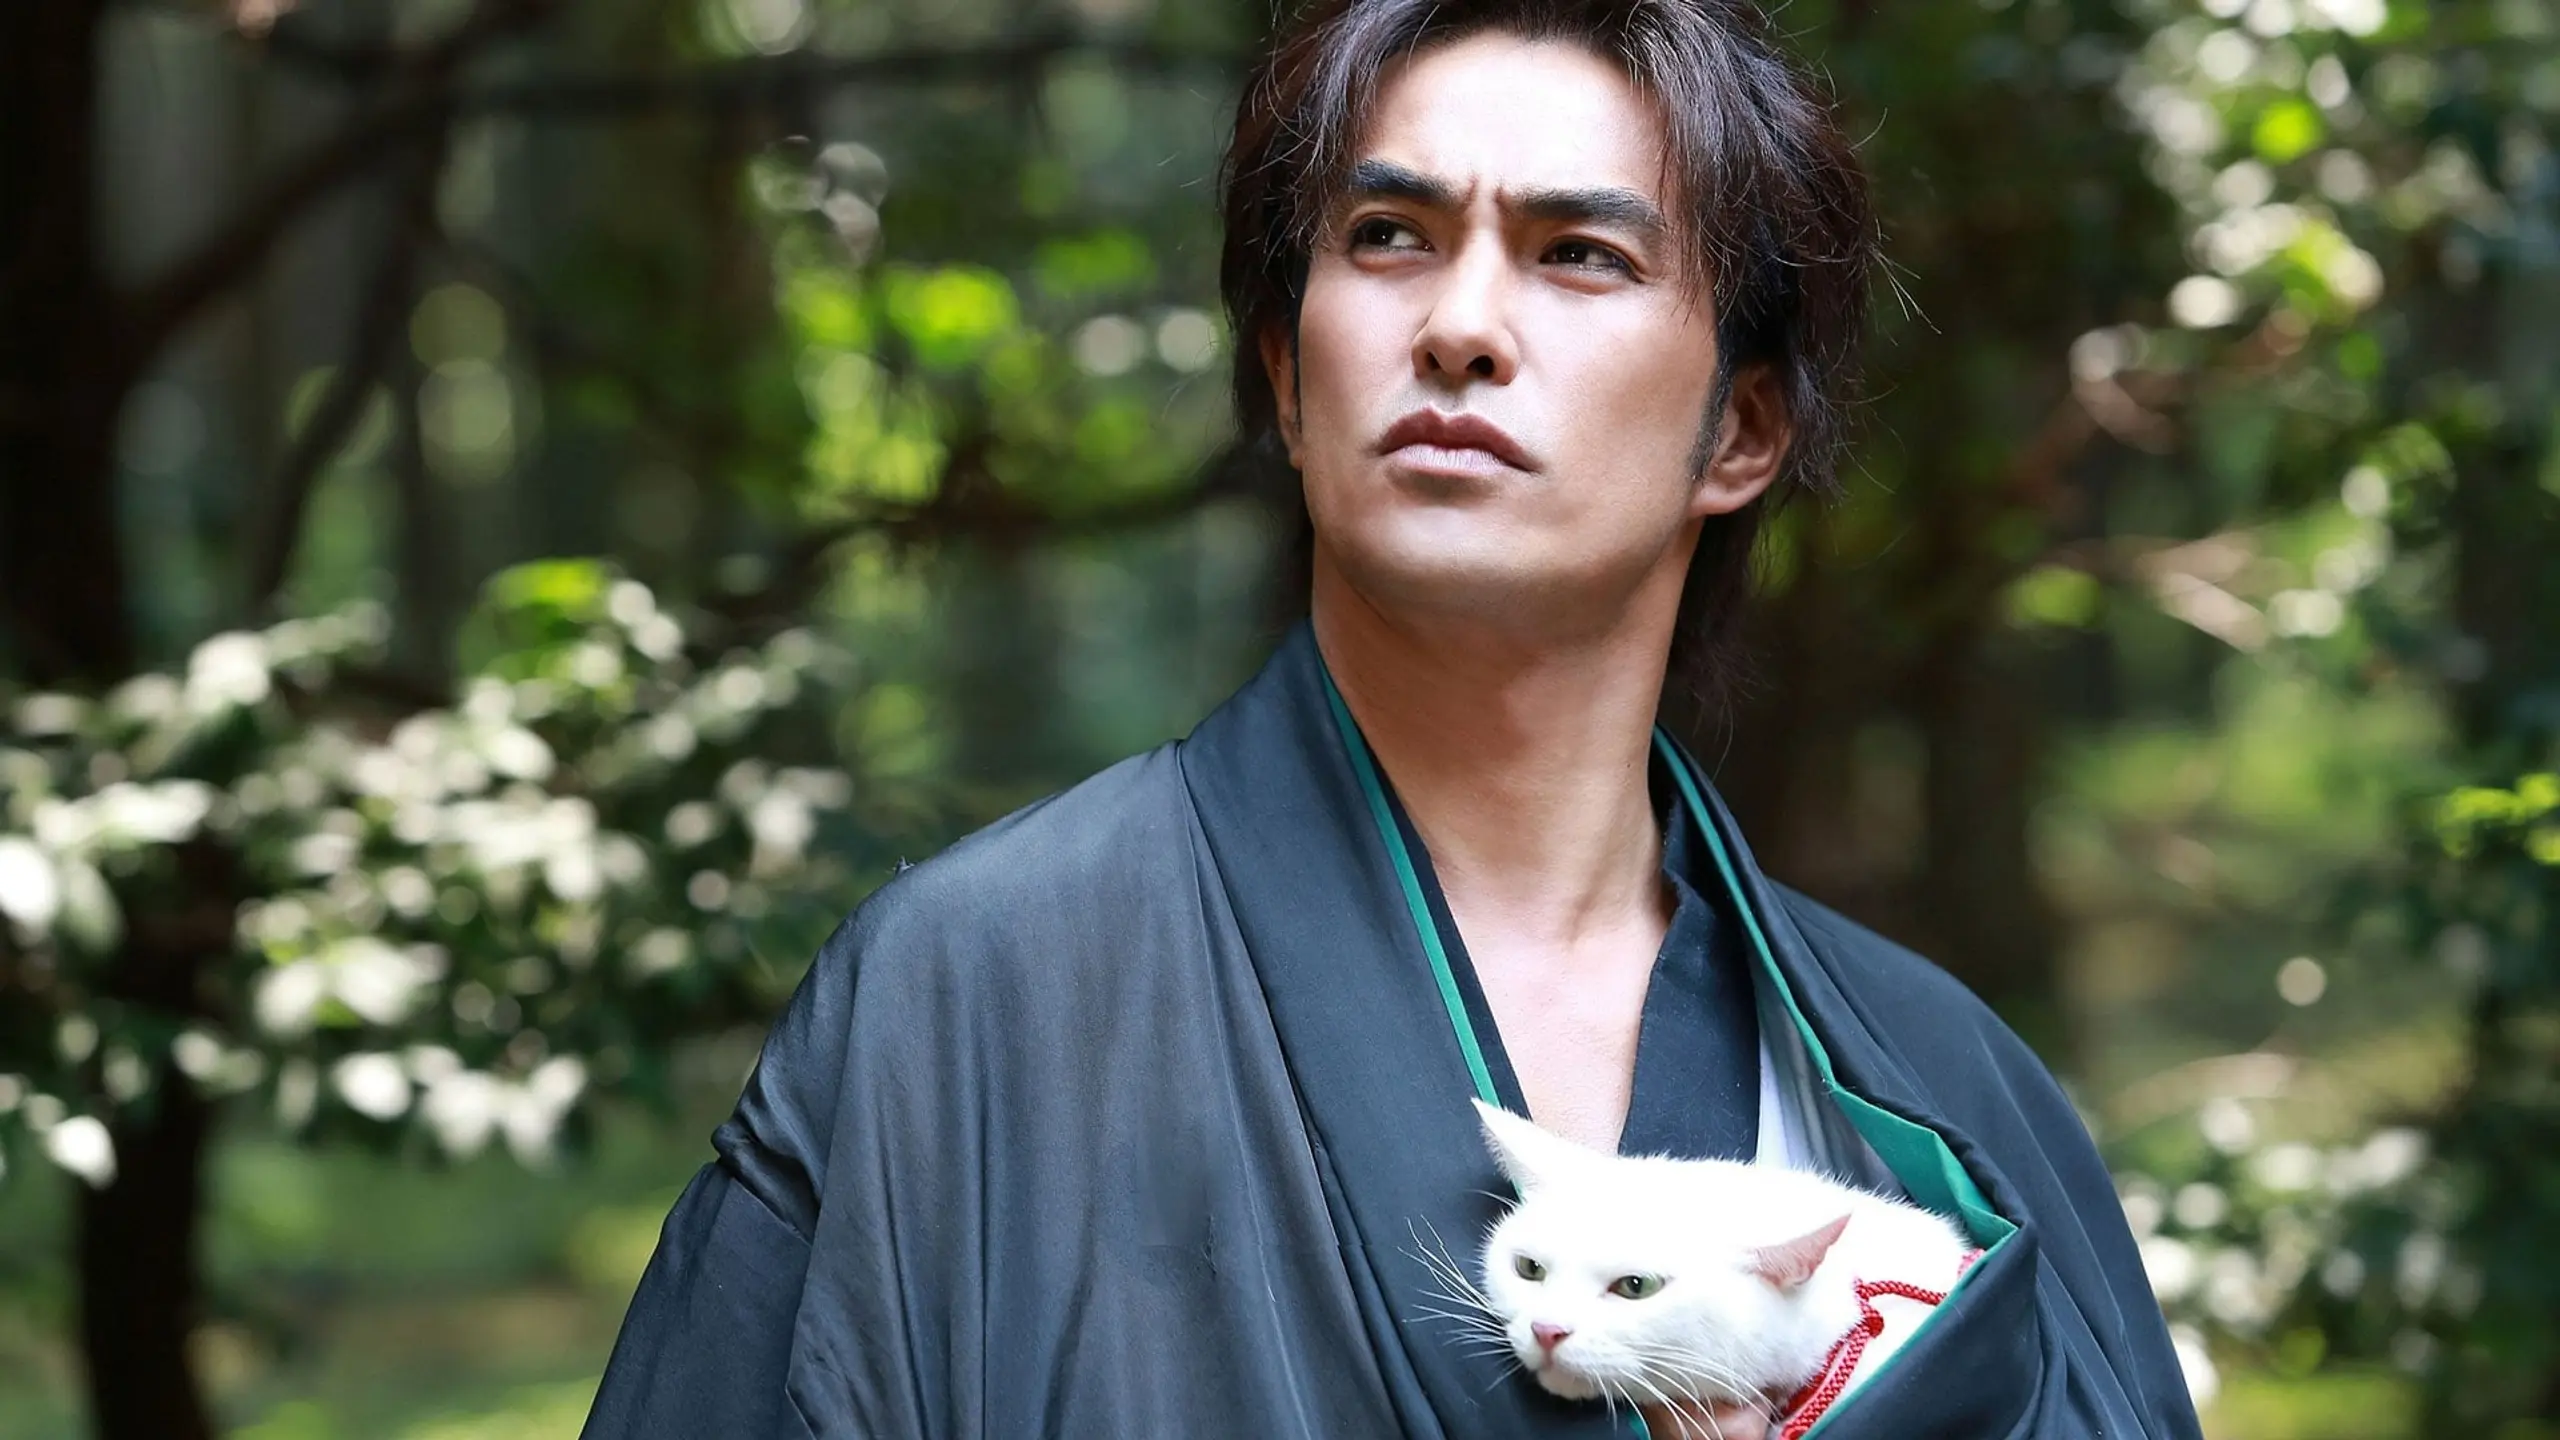 Samurai Cat: The Movie